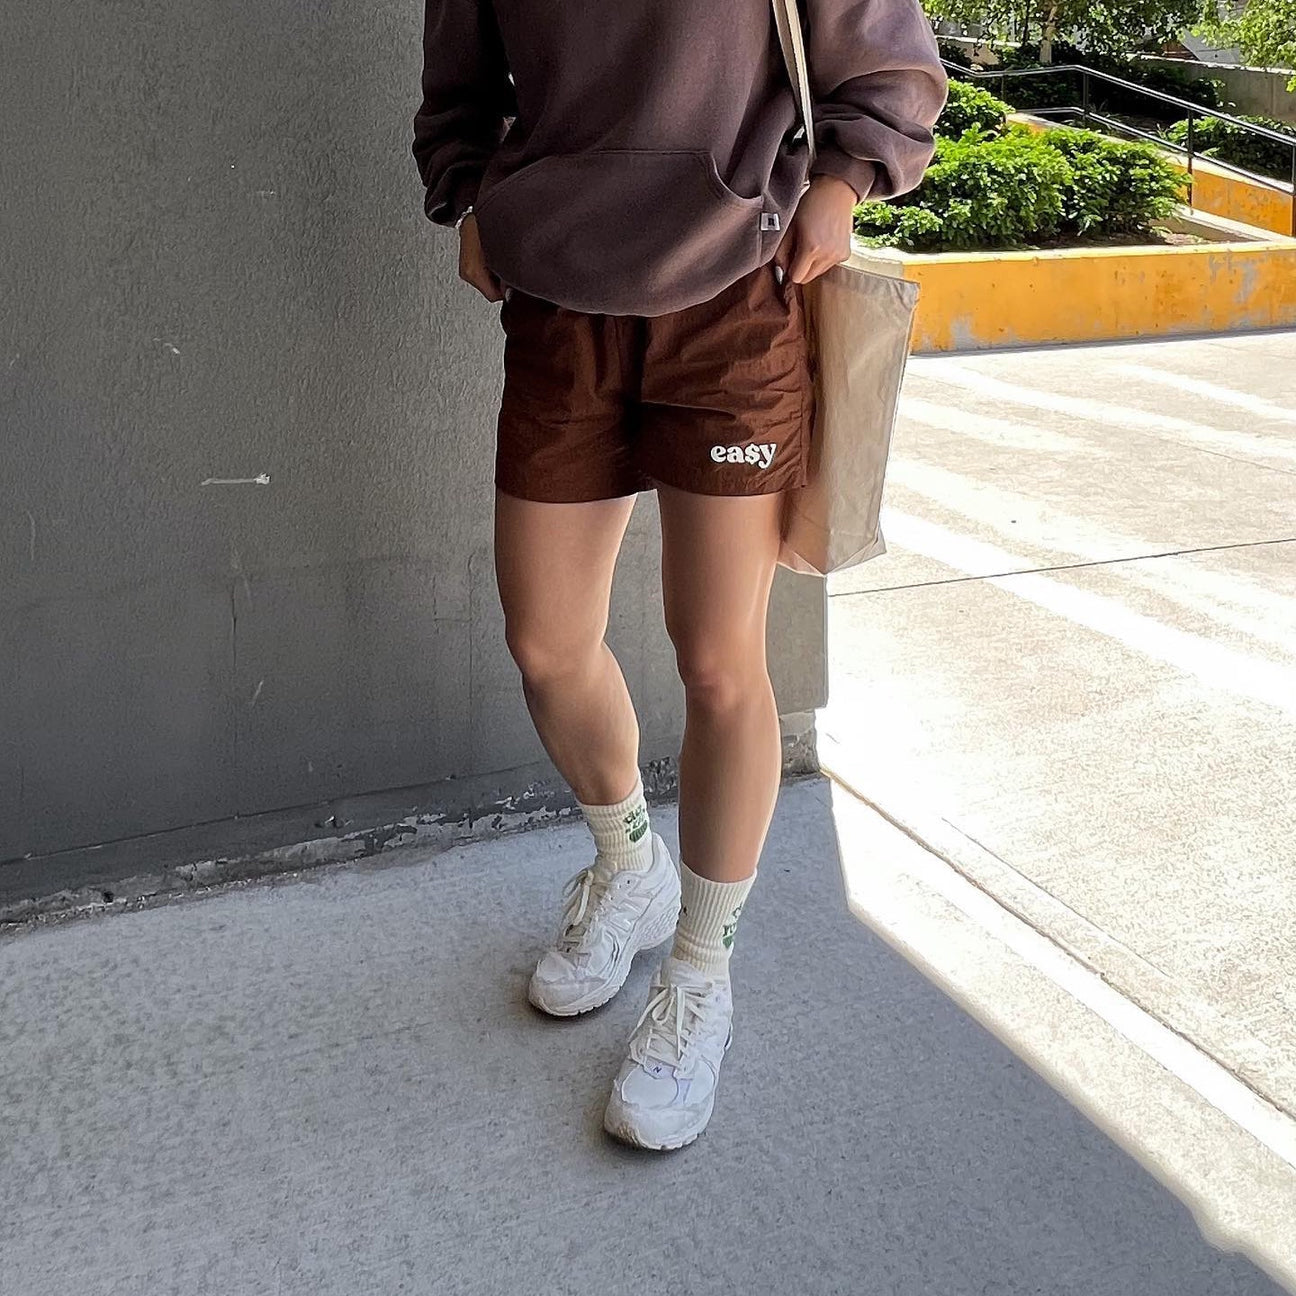 EA$Y Shorts | Leaf